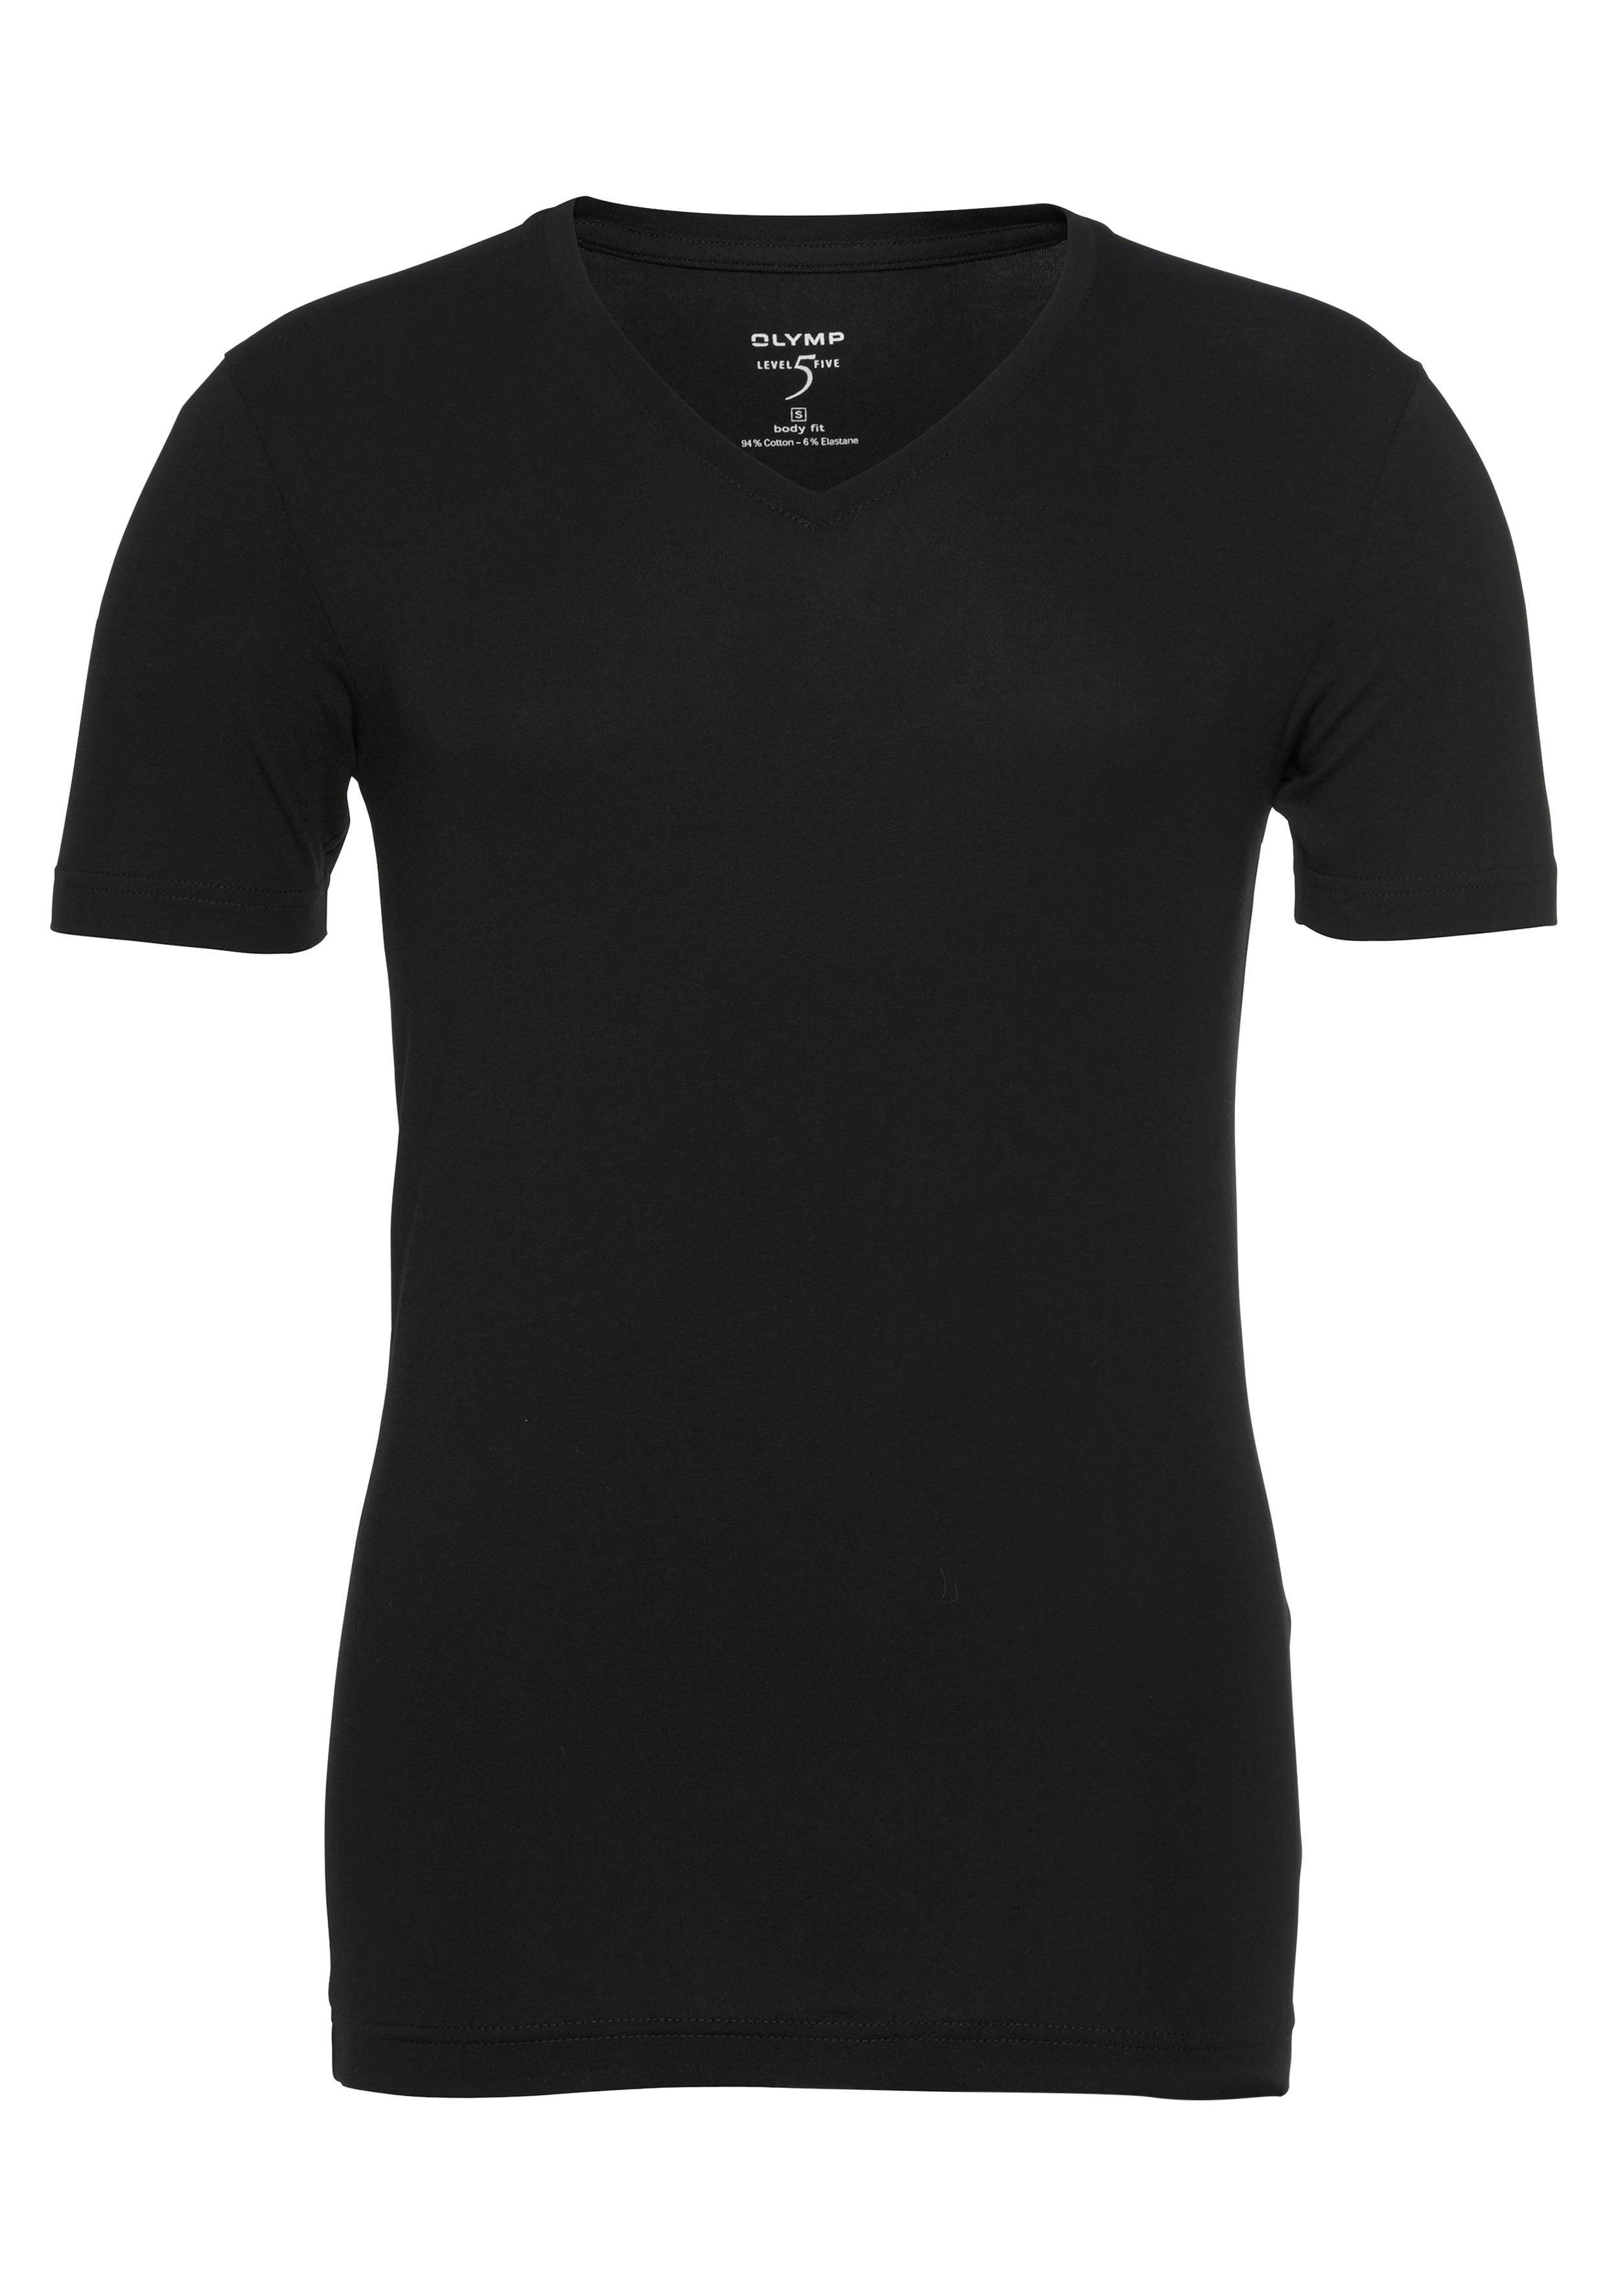 OLYMP T-Shirt Level Five body fit V-Ausschnitt, Ideal zum Unterziehen schwarz